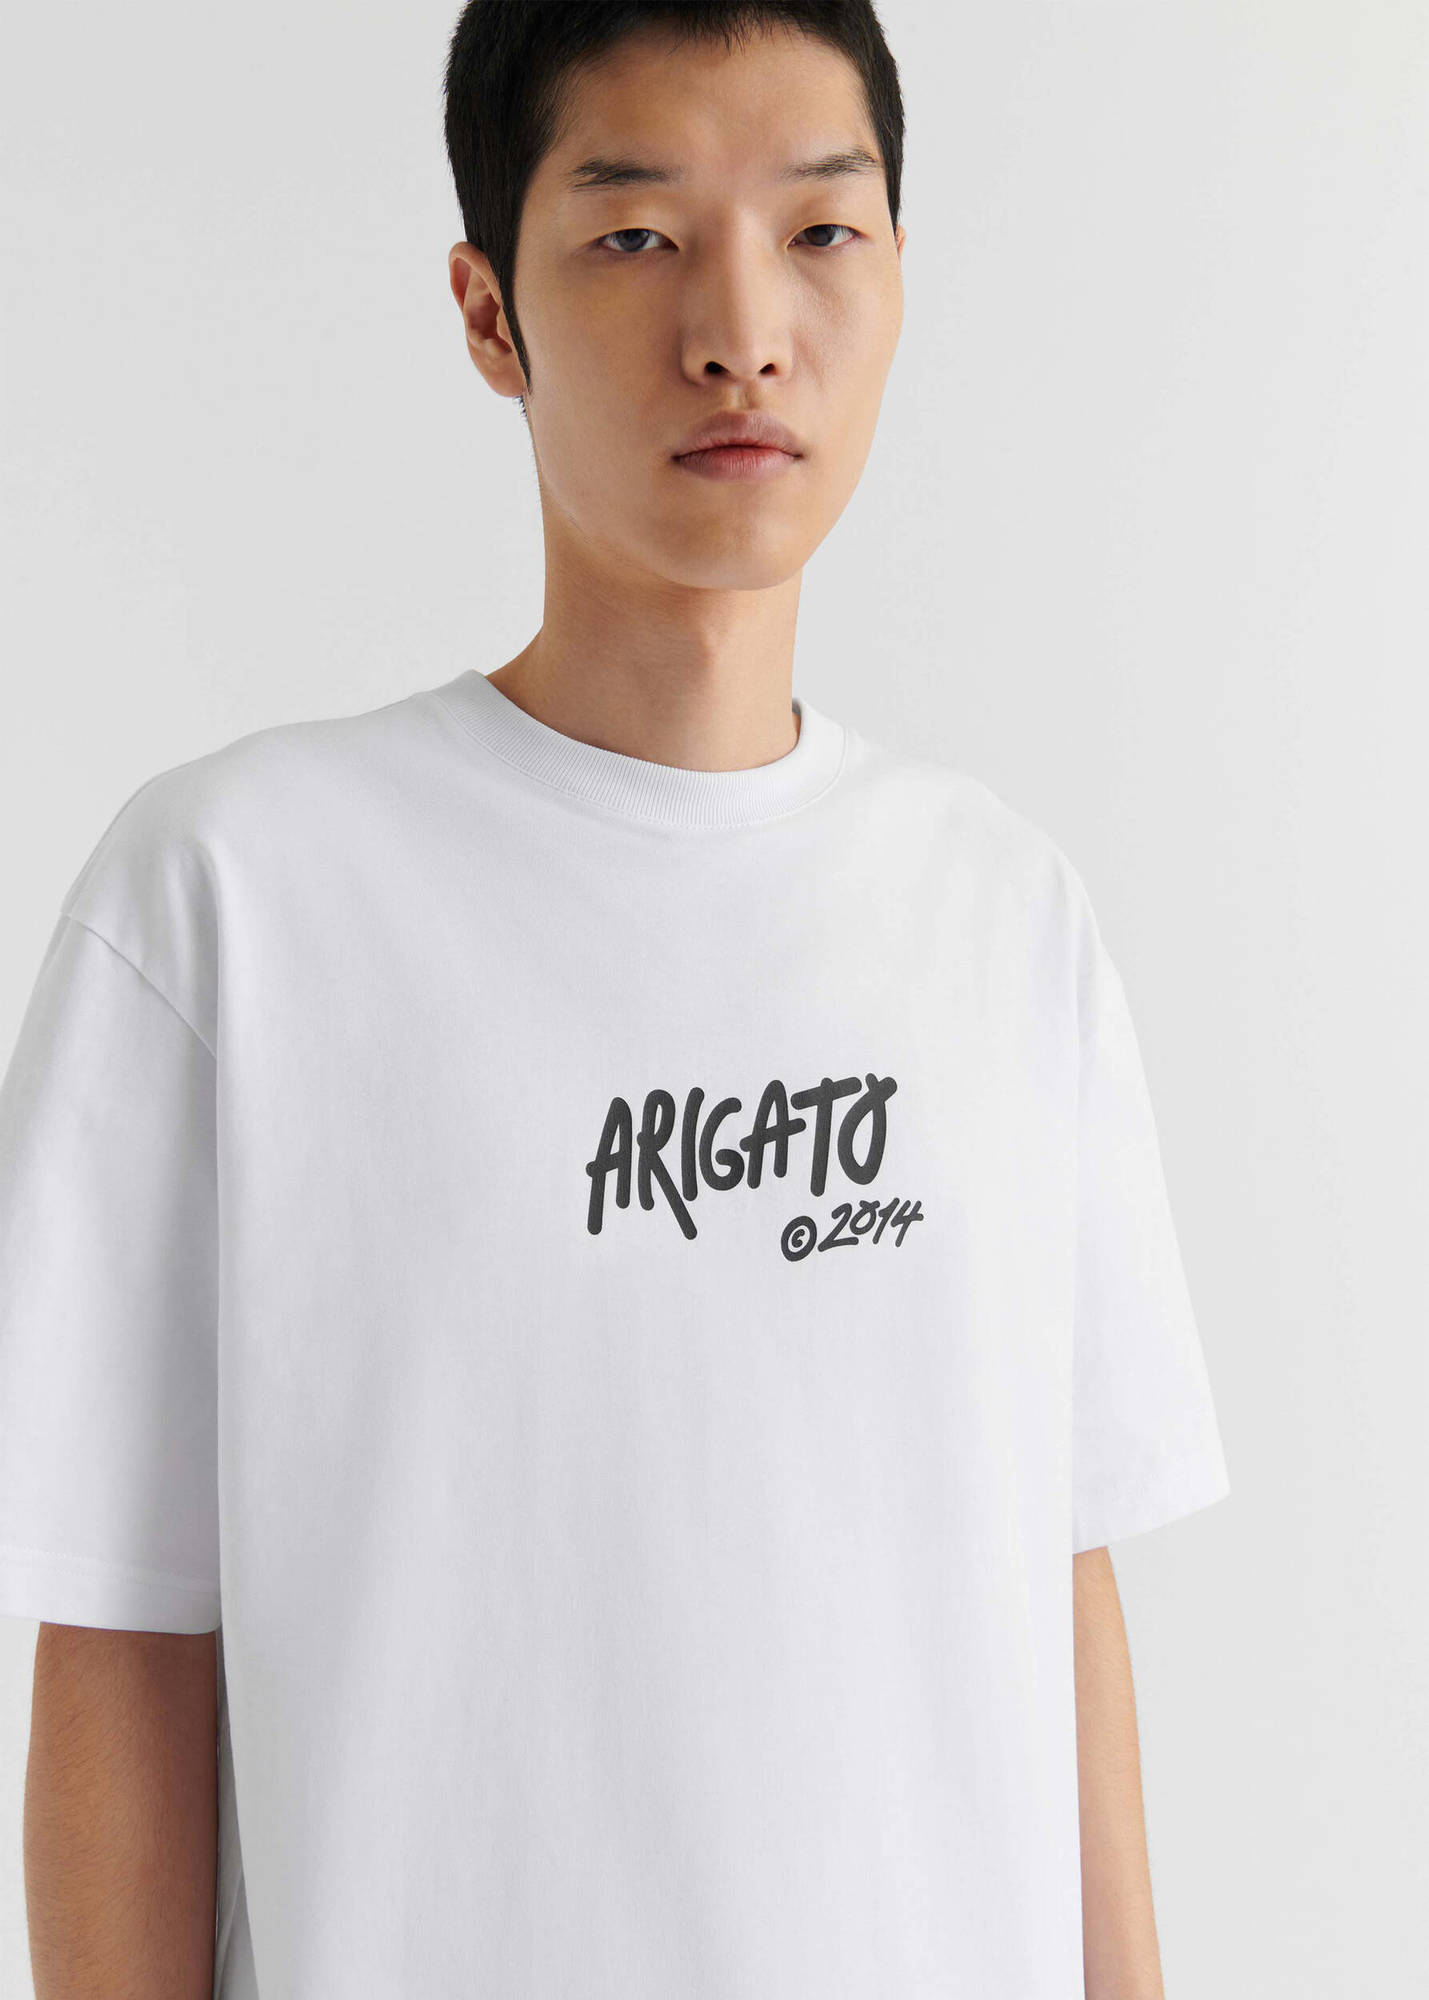 Arigato Tag T-Shirt